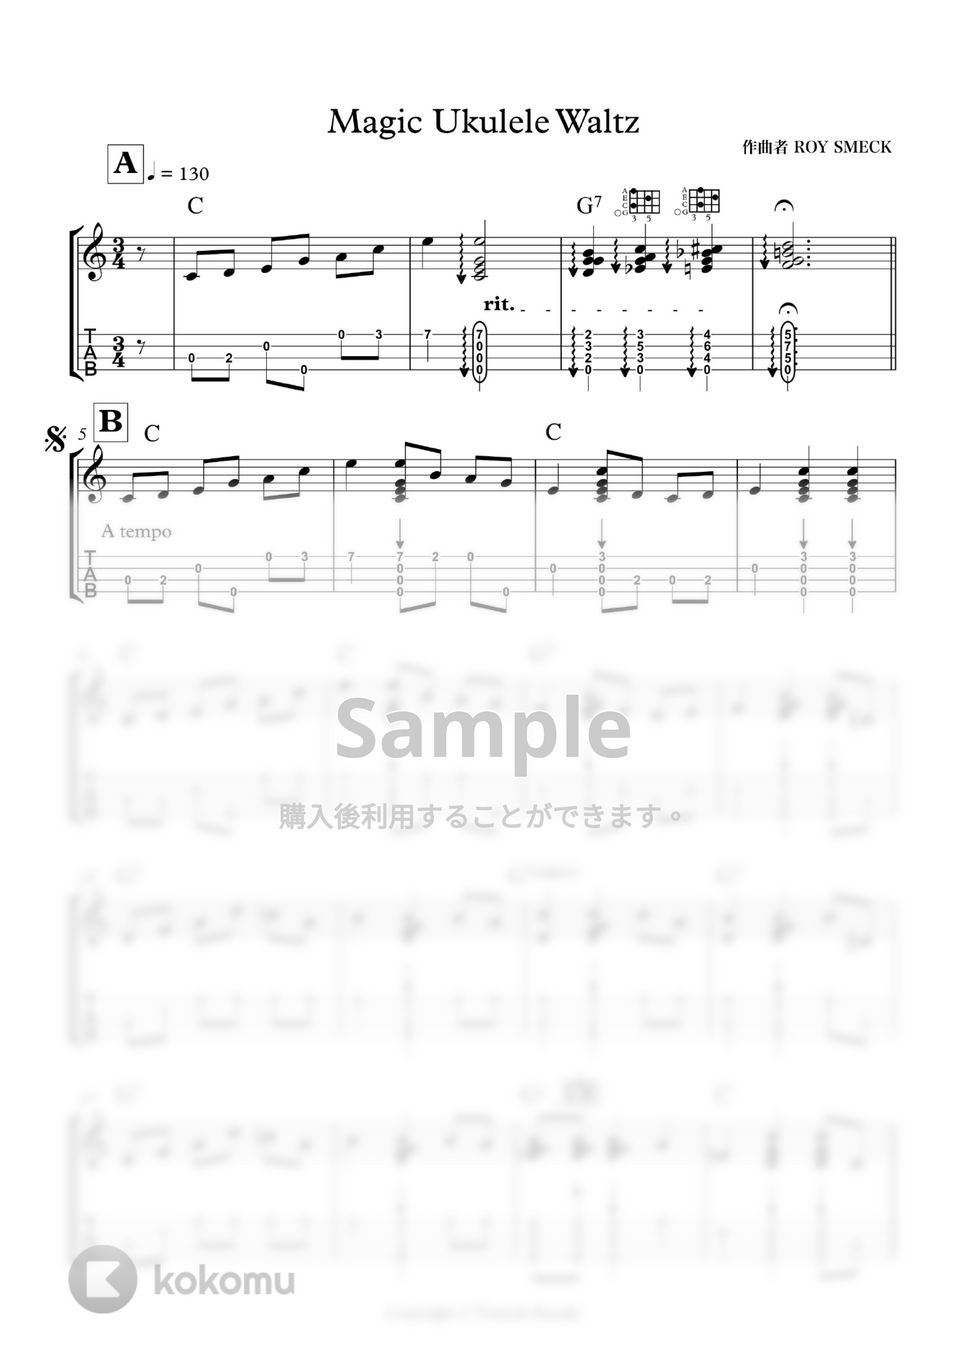 Roy Smeck - Magic Ukulele Waltz by 鈴木智貴